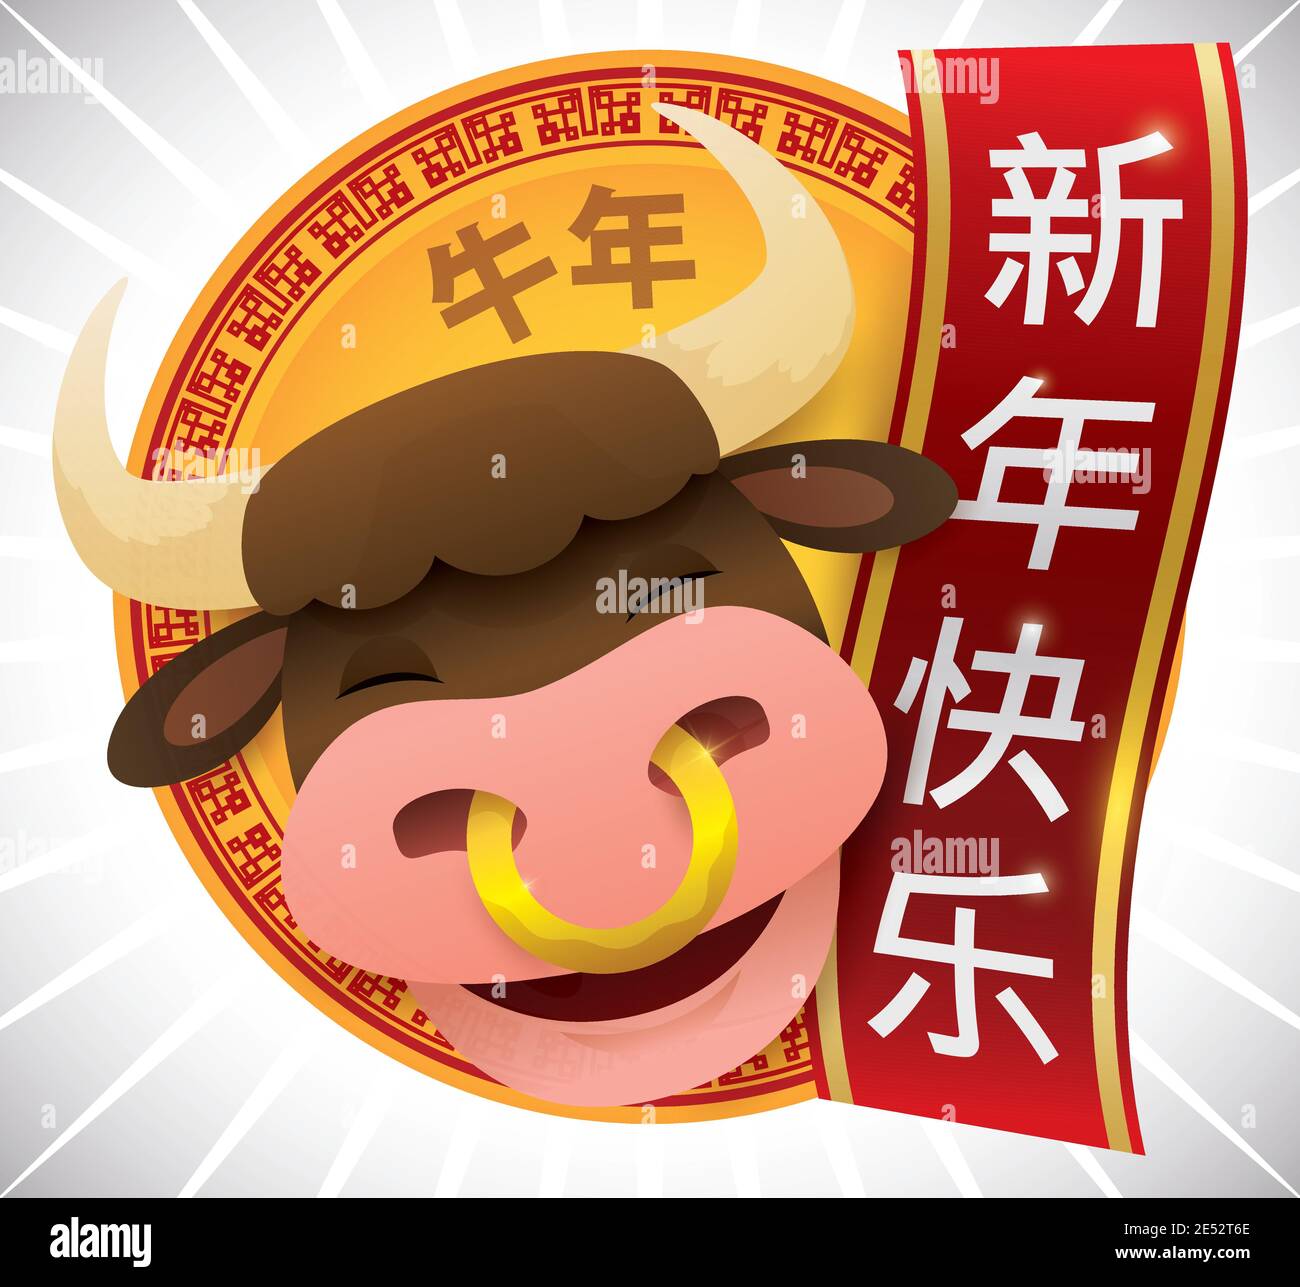 Lächelnder Ochse feiert ein glückliches chinesisches Neujahr des Ochsen (geschrieben in chinesischer Kalligraphie), mit Gruß hängende Schriftrolle und goldene Glückmünze. Stock Vektor